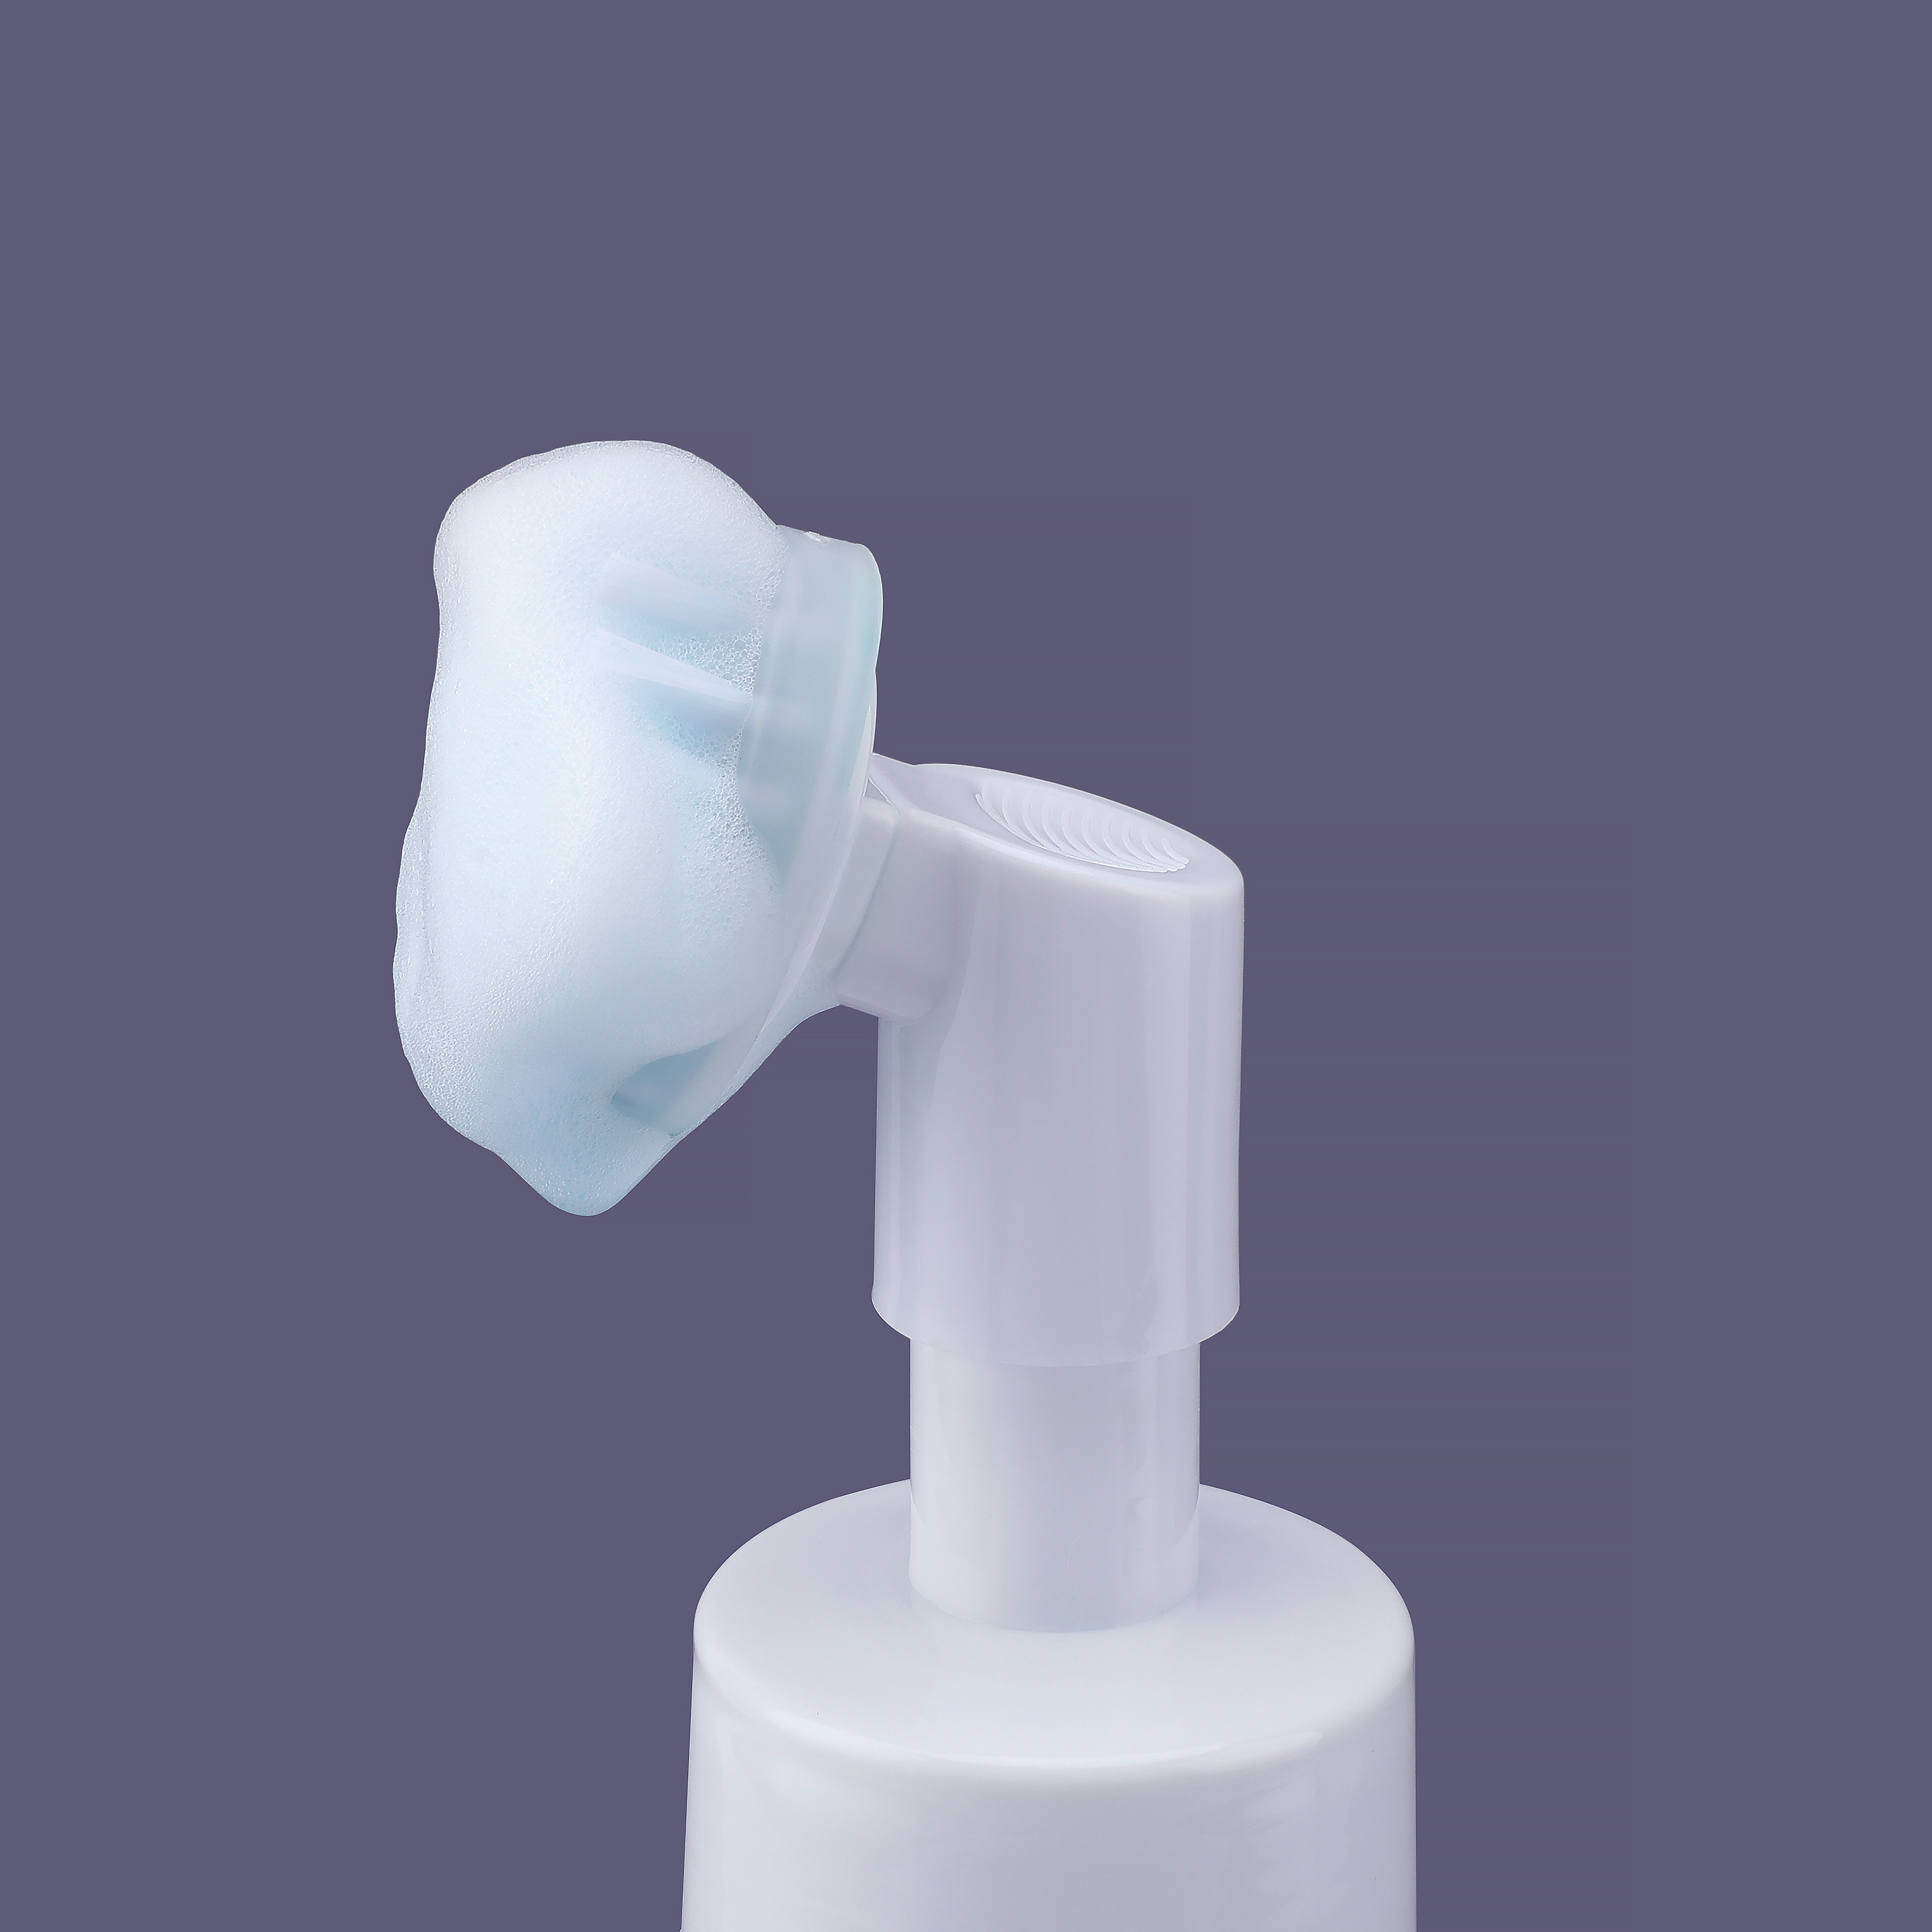 Bomba de espuma blanca de plástico 42/410 de gama alta al por mayor con cepillo de plástico